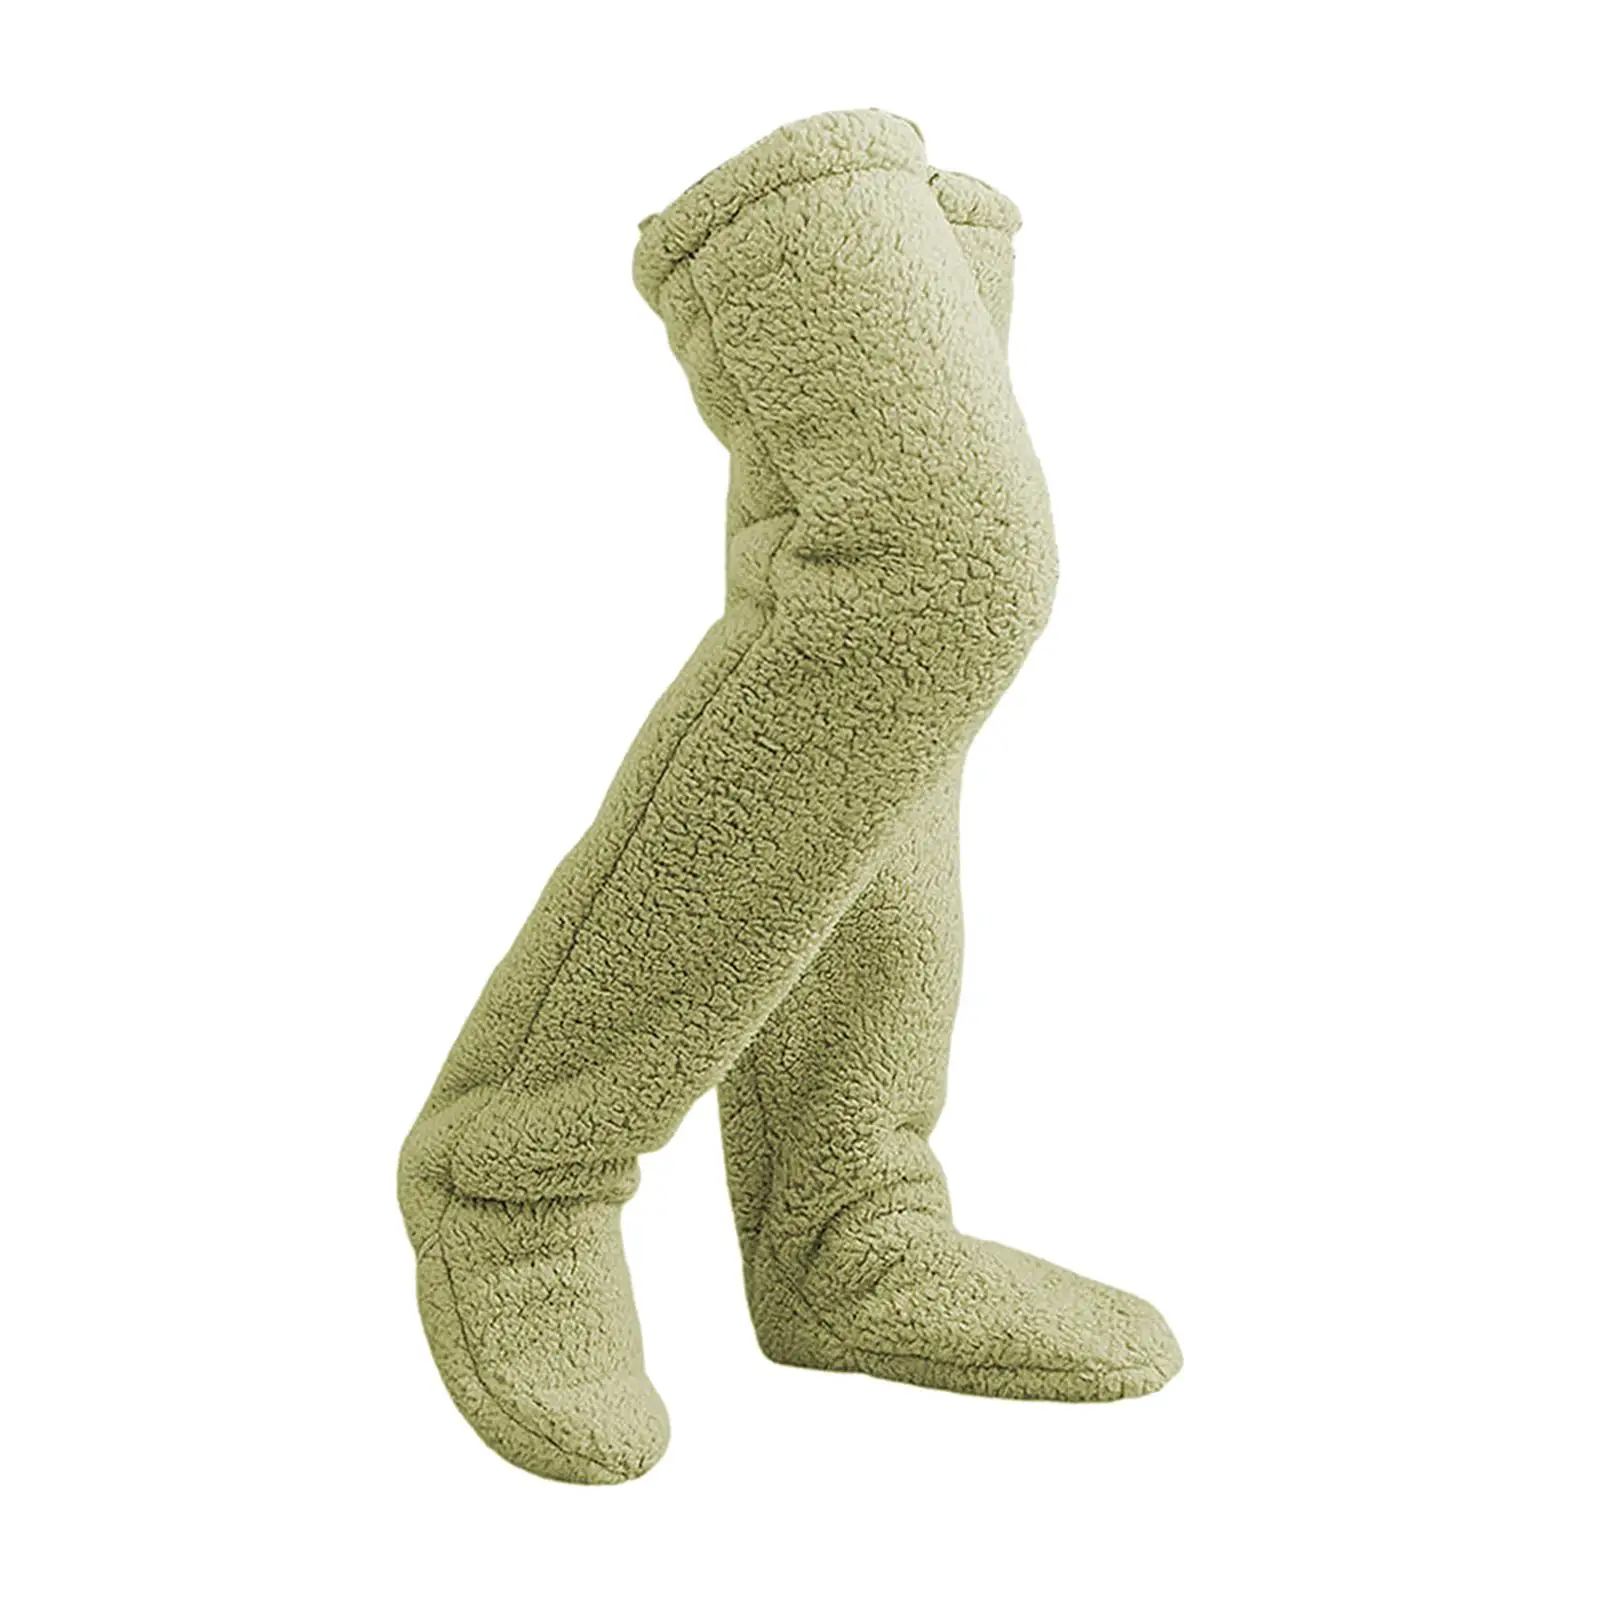 Plush Leg Warmers, Thigh High Socks Long Boot Stockings, Soft Slipper Stockings, Over Knee Fuzzy Socks for Dorm Living Room